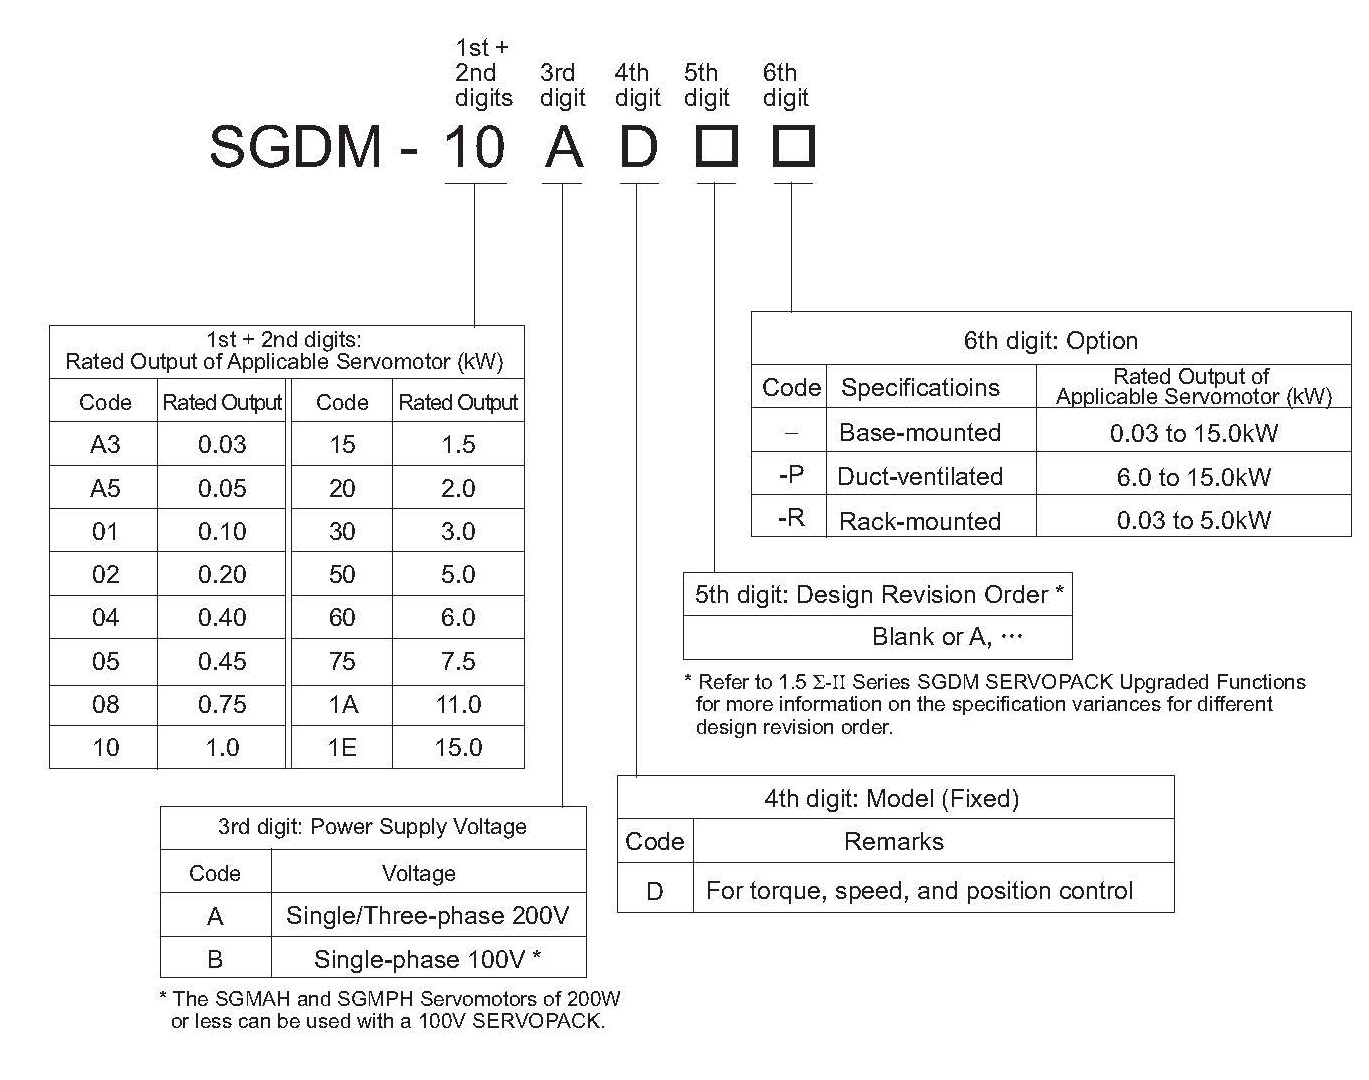 SGDM-30ADA-R spec